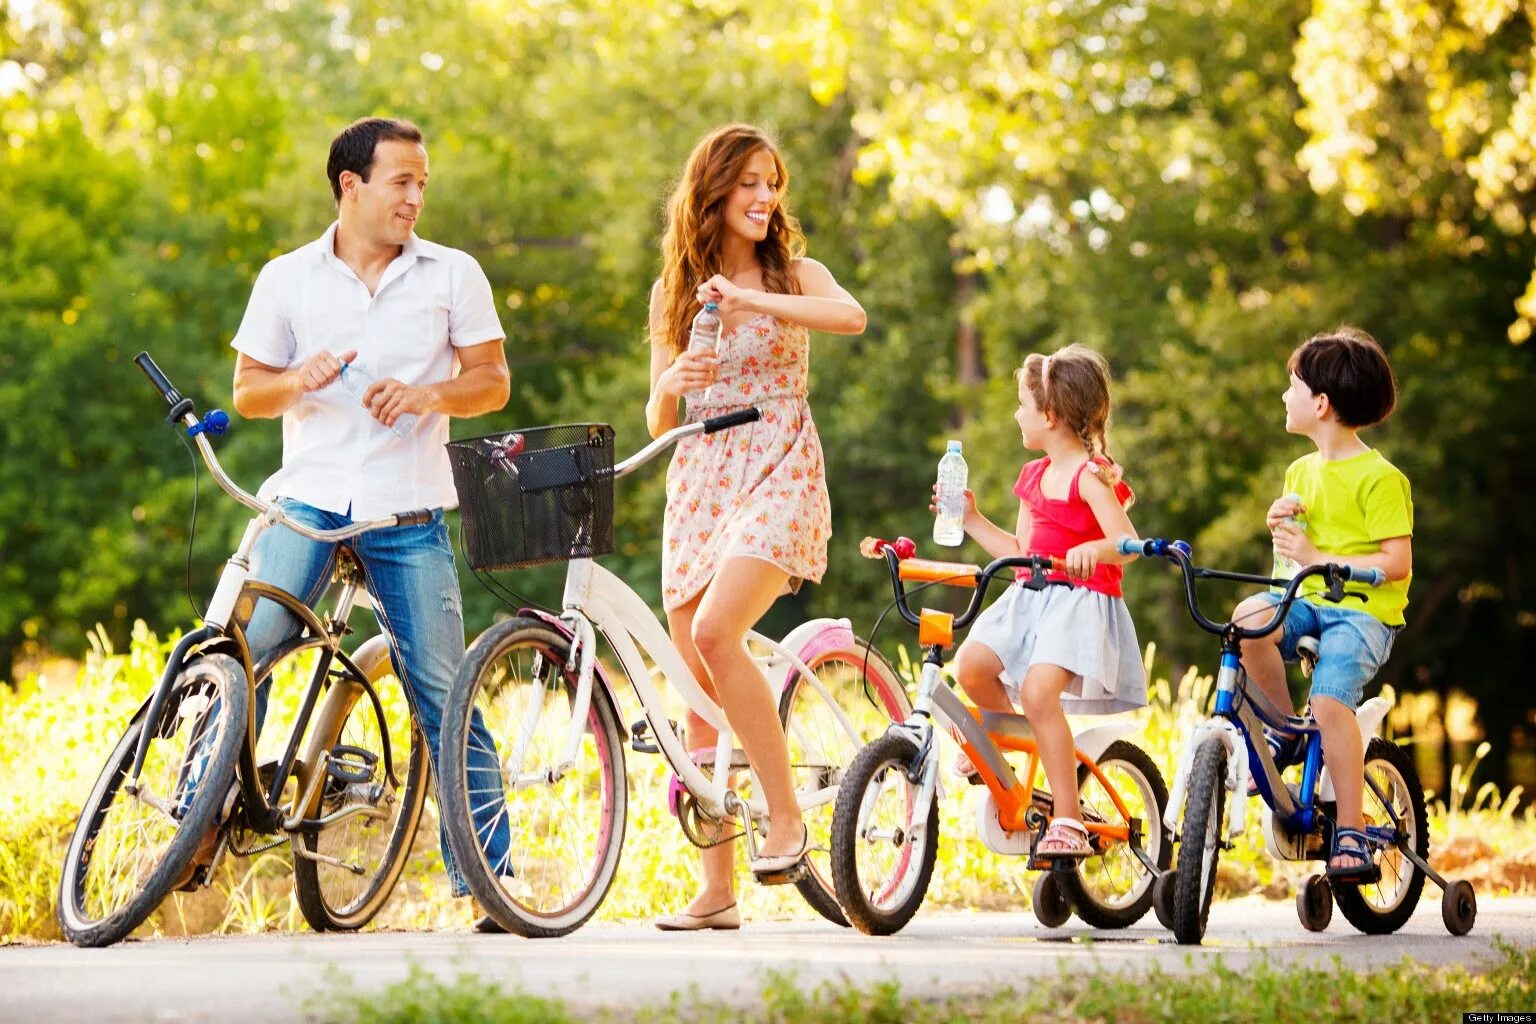 Развлечение выходного дня. Семья на прогулке. Семья на велосипедах. Дети на летней прогулке. Семейный досуг.